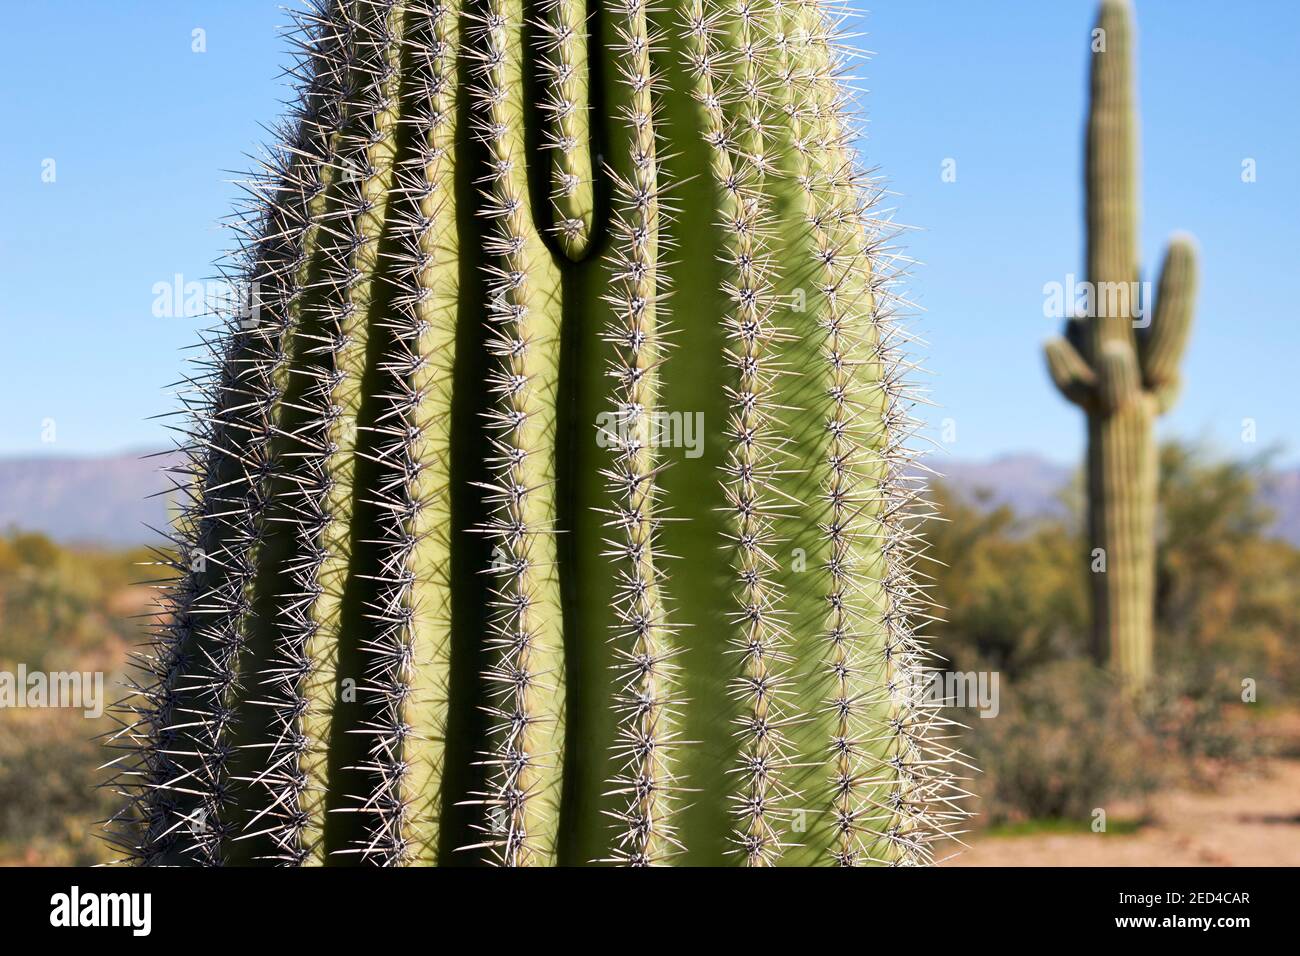 Saguaro cactus (Carnegiea gigantea) in the Arizona desert Stock Photo